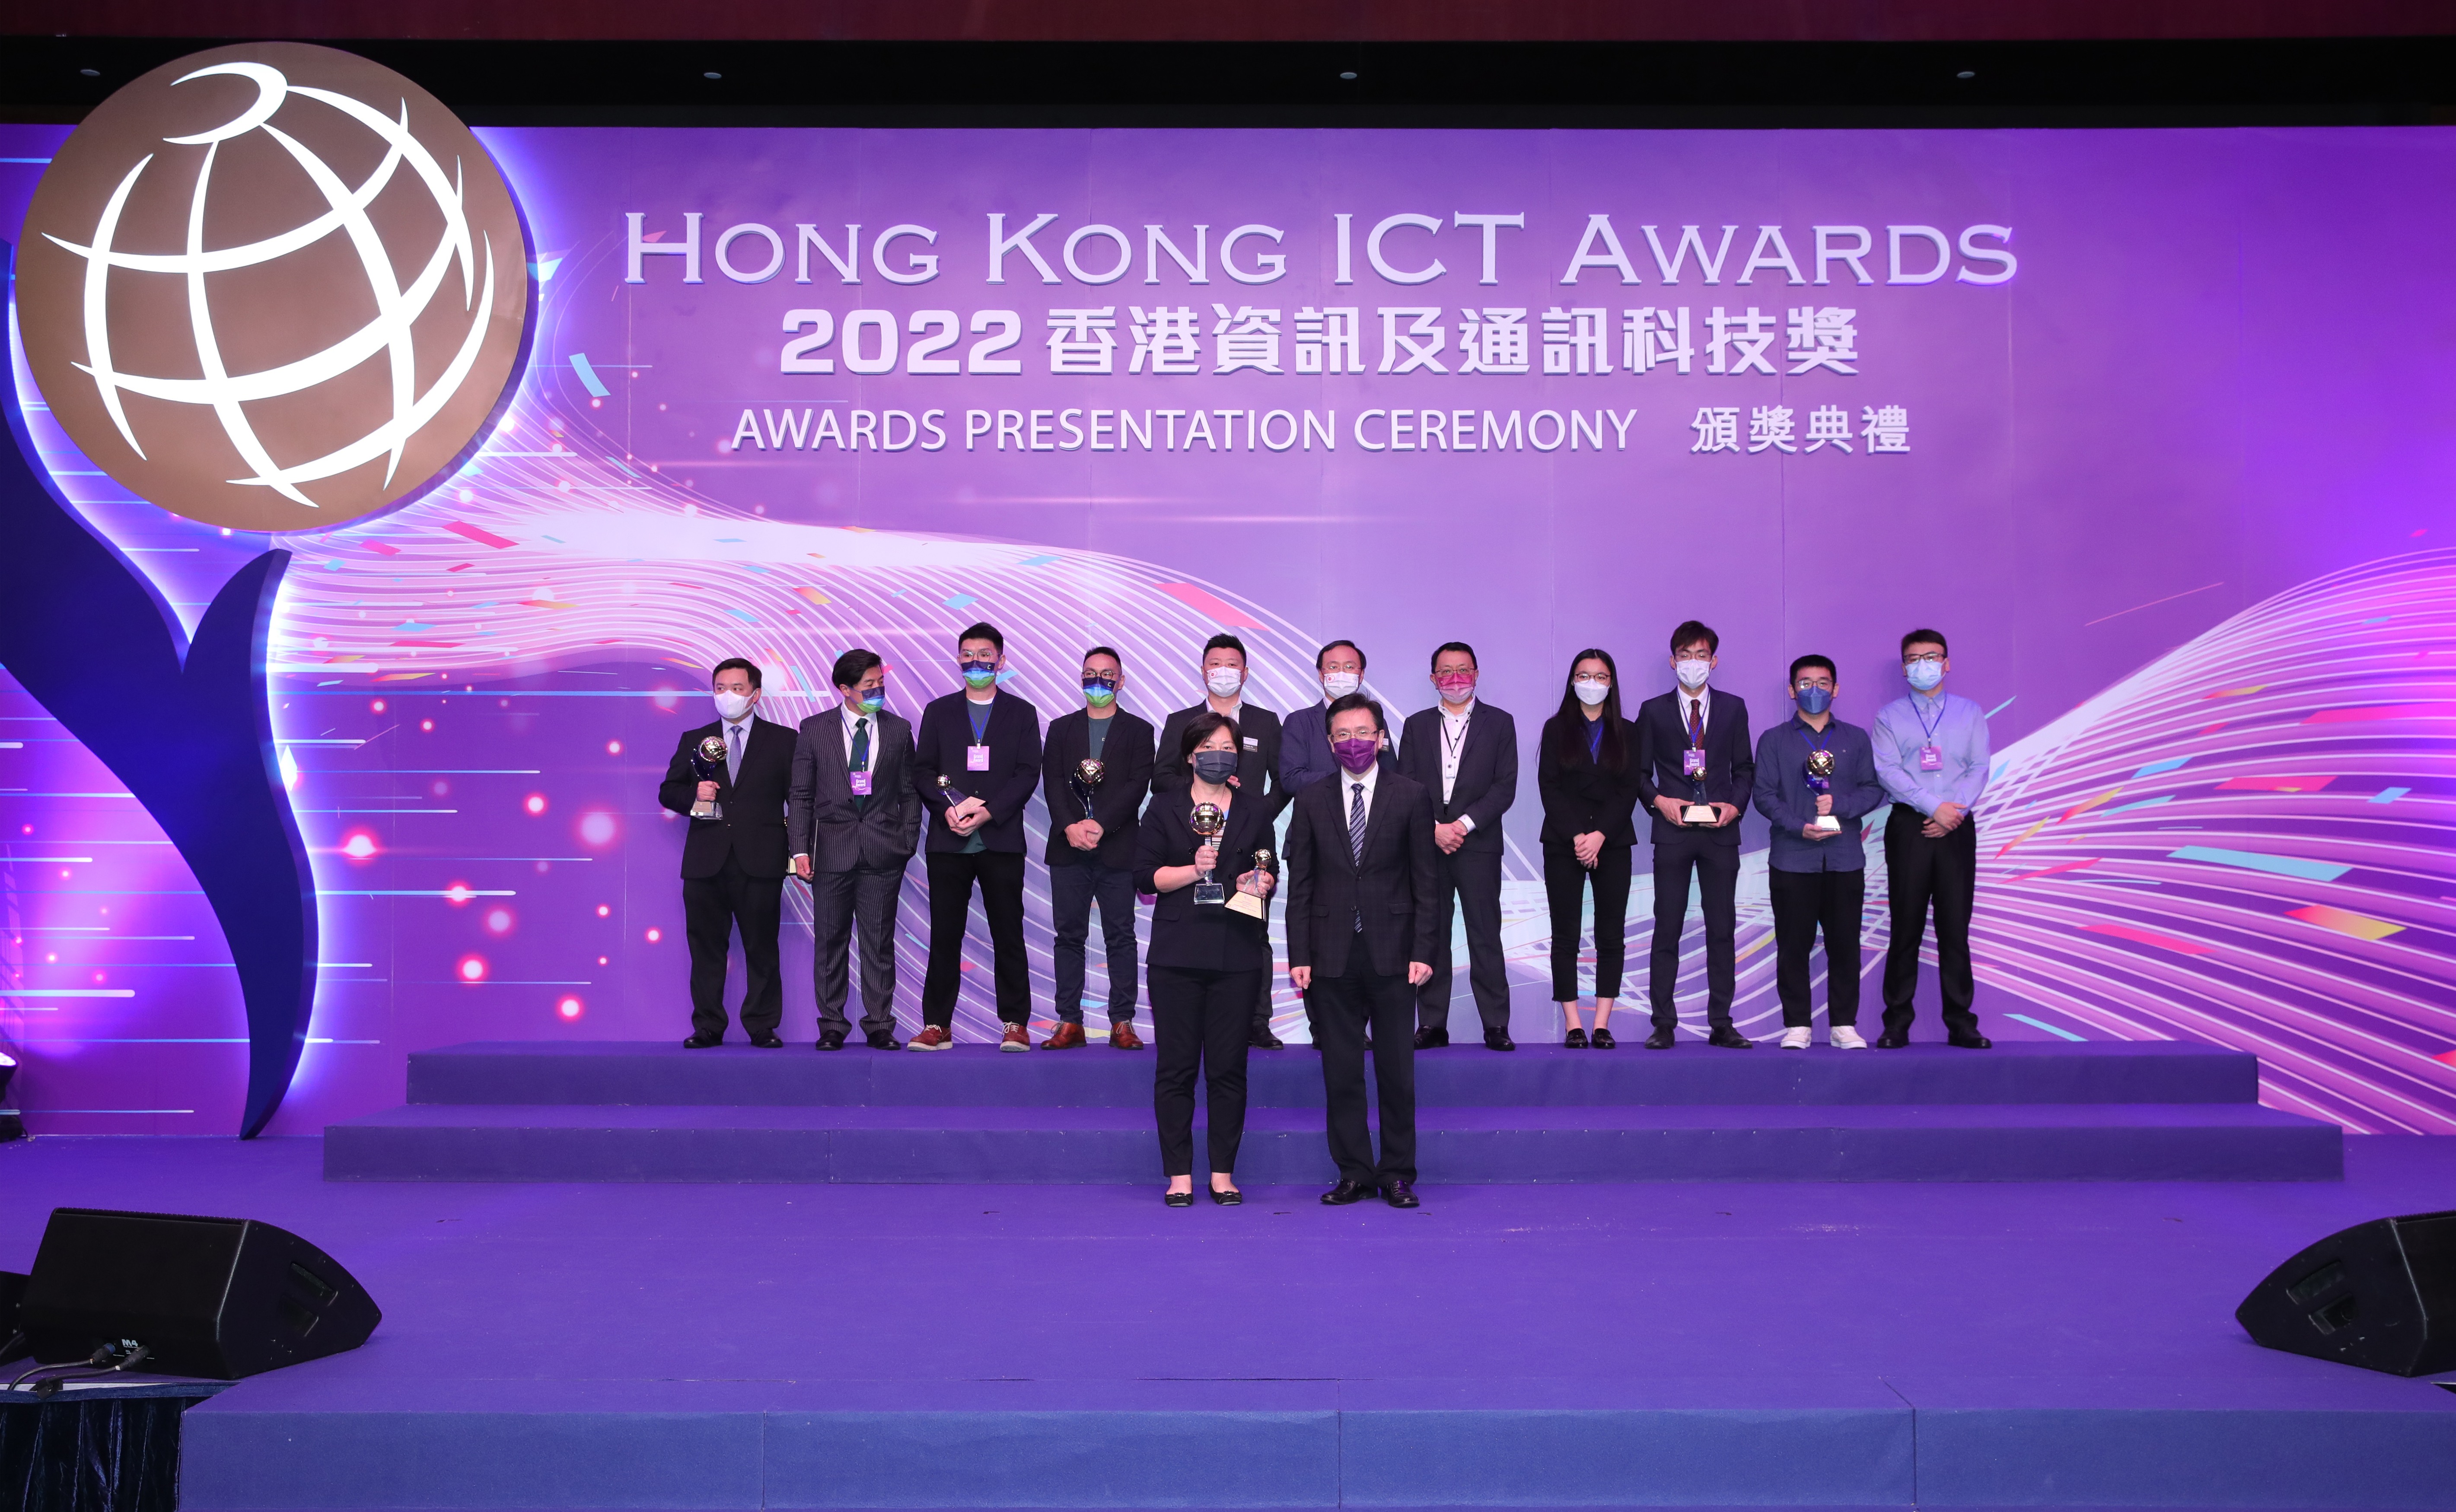 Hong Kong ICT Awards 2022 Smart Business Grand Award Winner